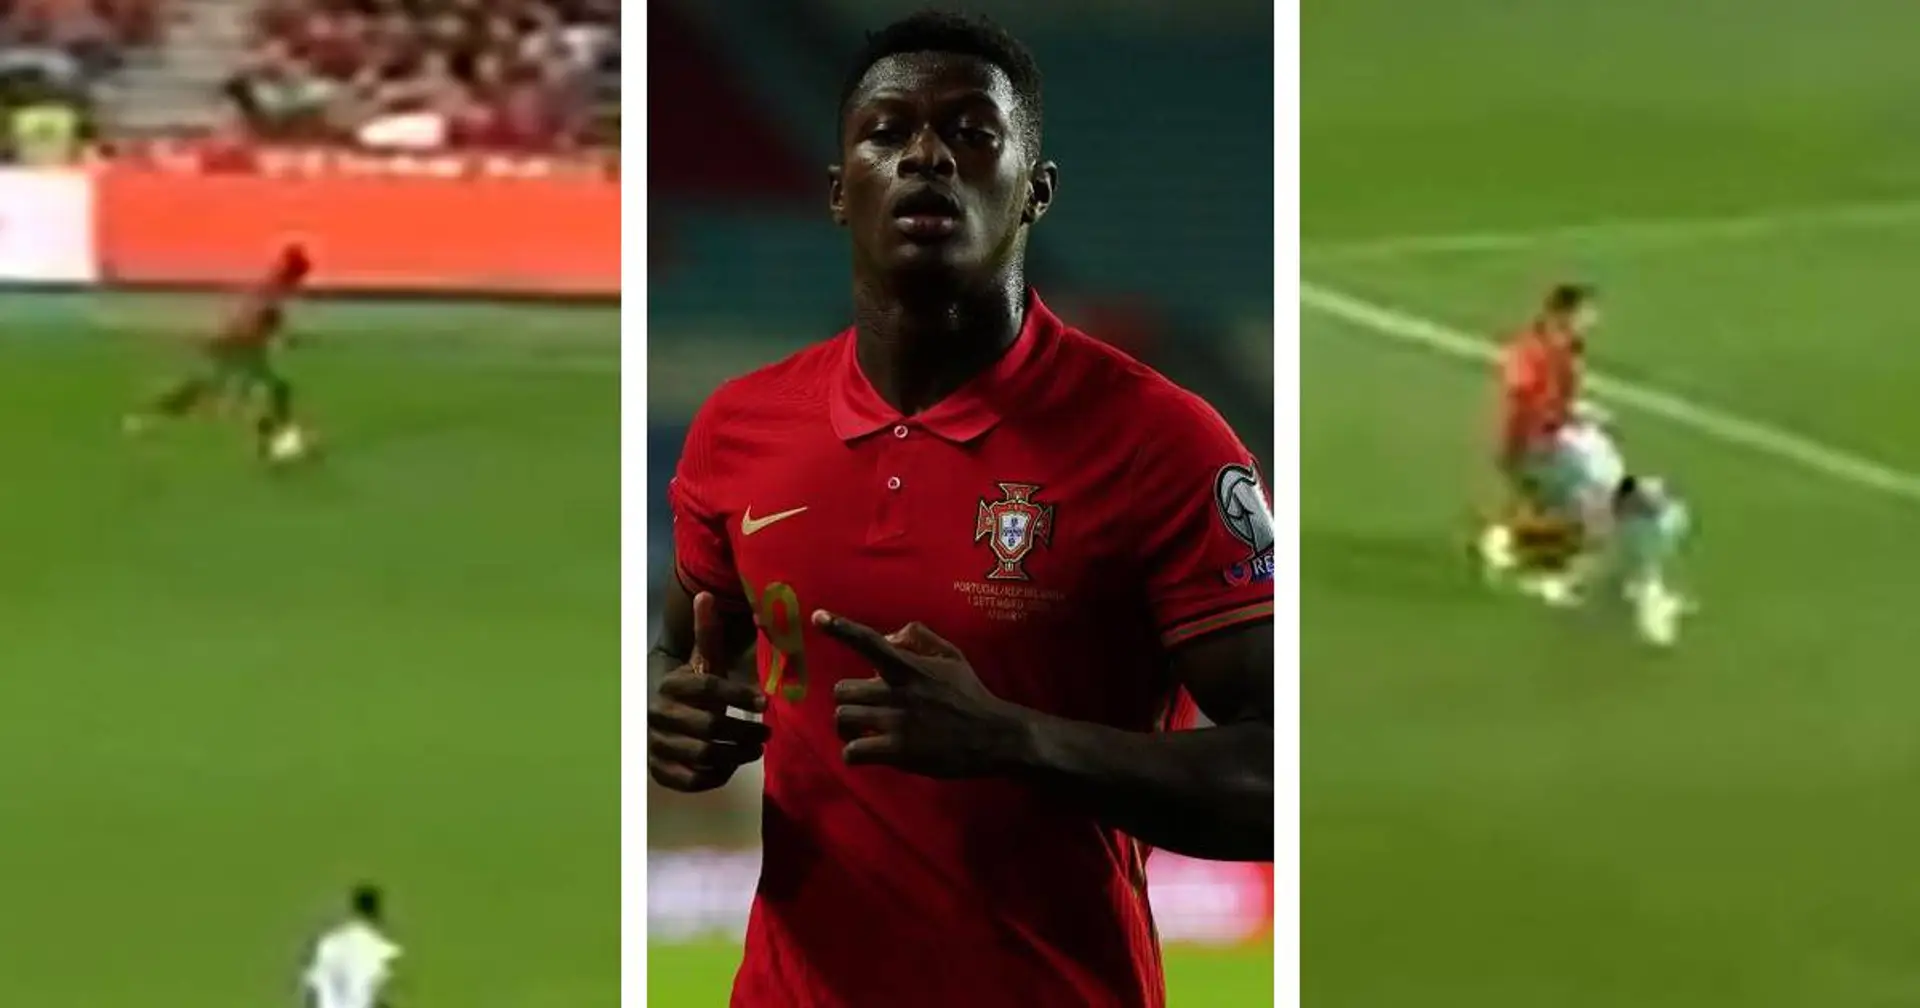 "Mbappé l'aurait mise", les fans réagissent aux caviars de Mendes avec le Portugal, pour 0 passe décisive au final